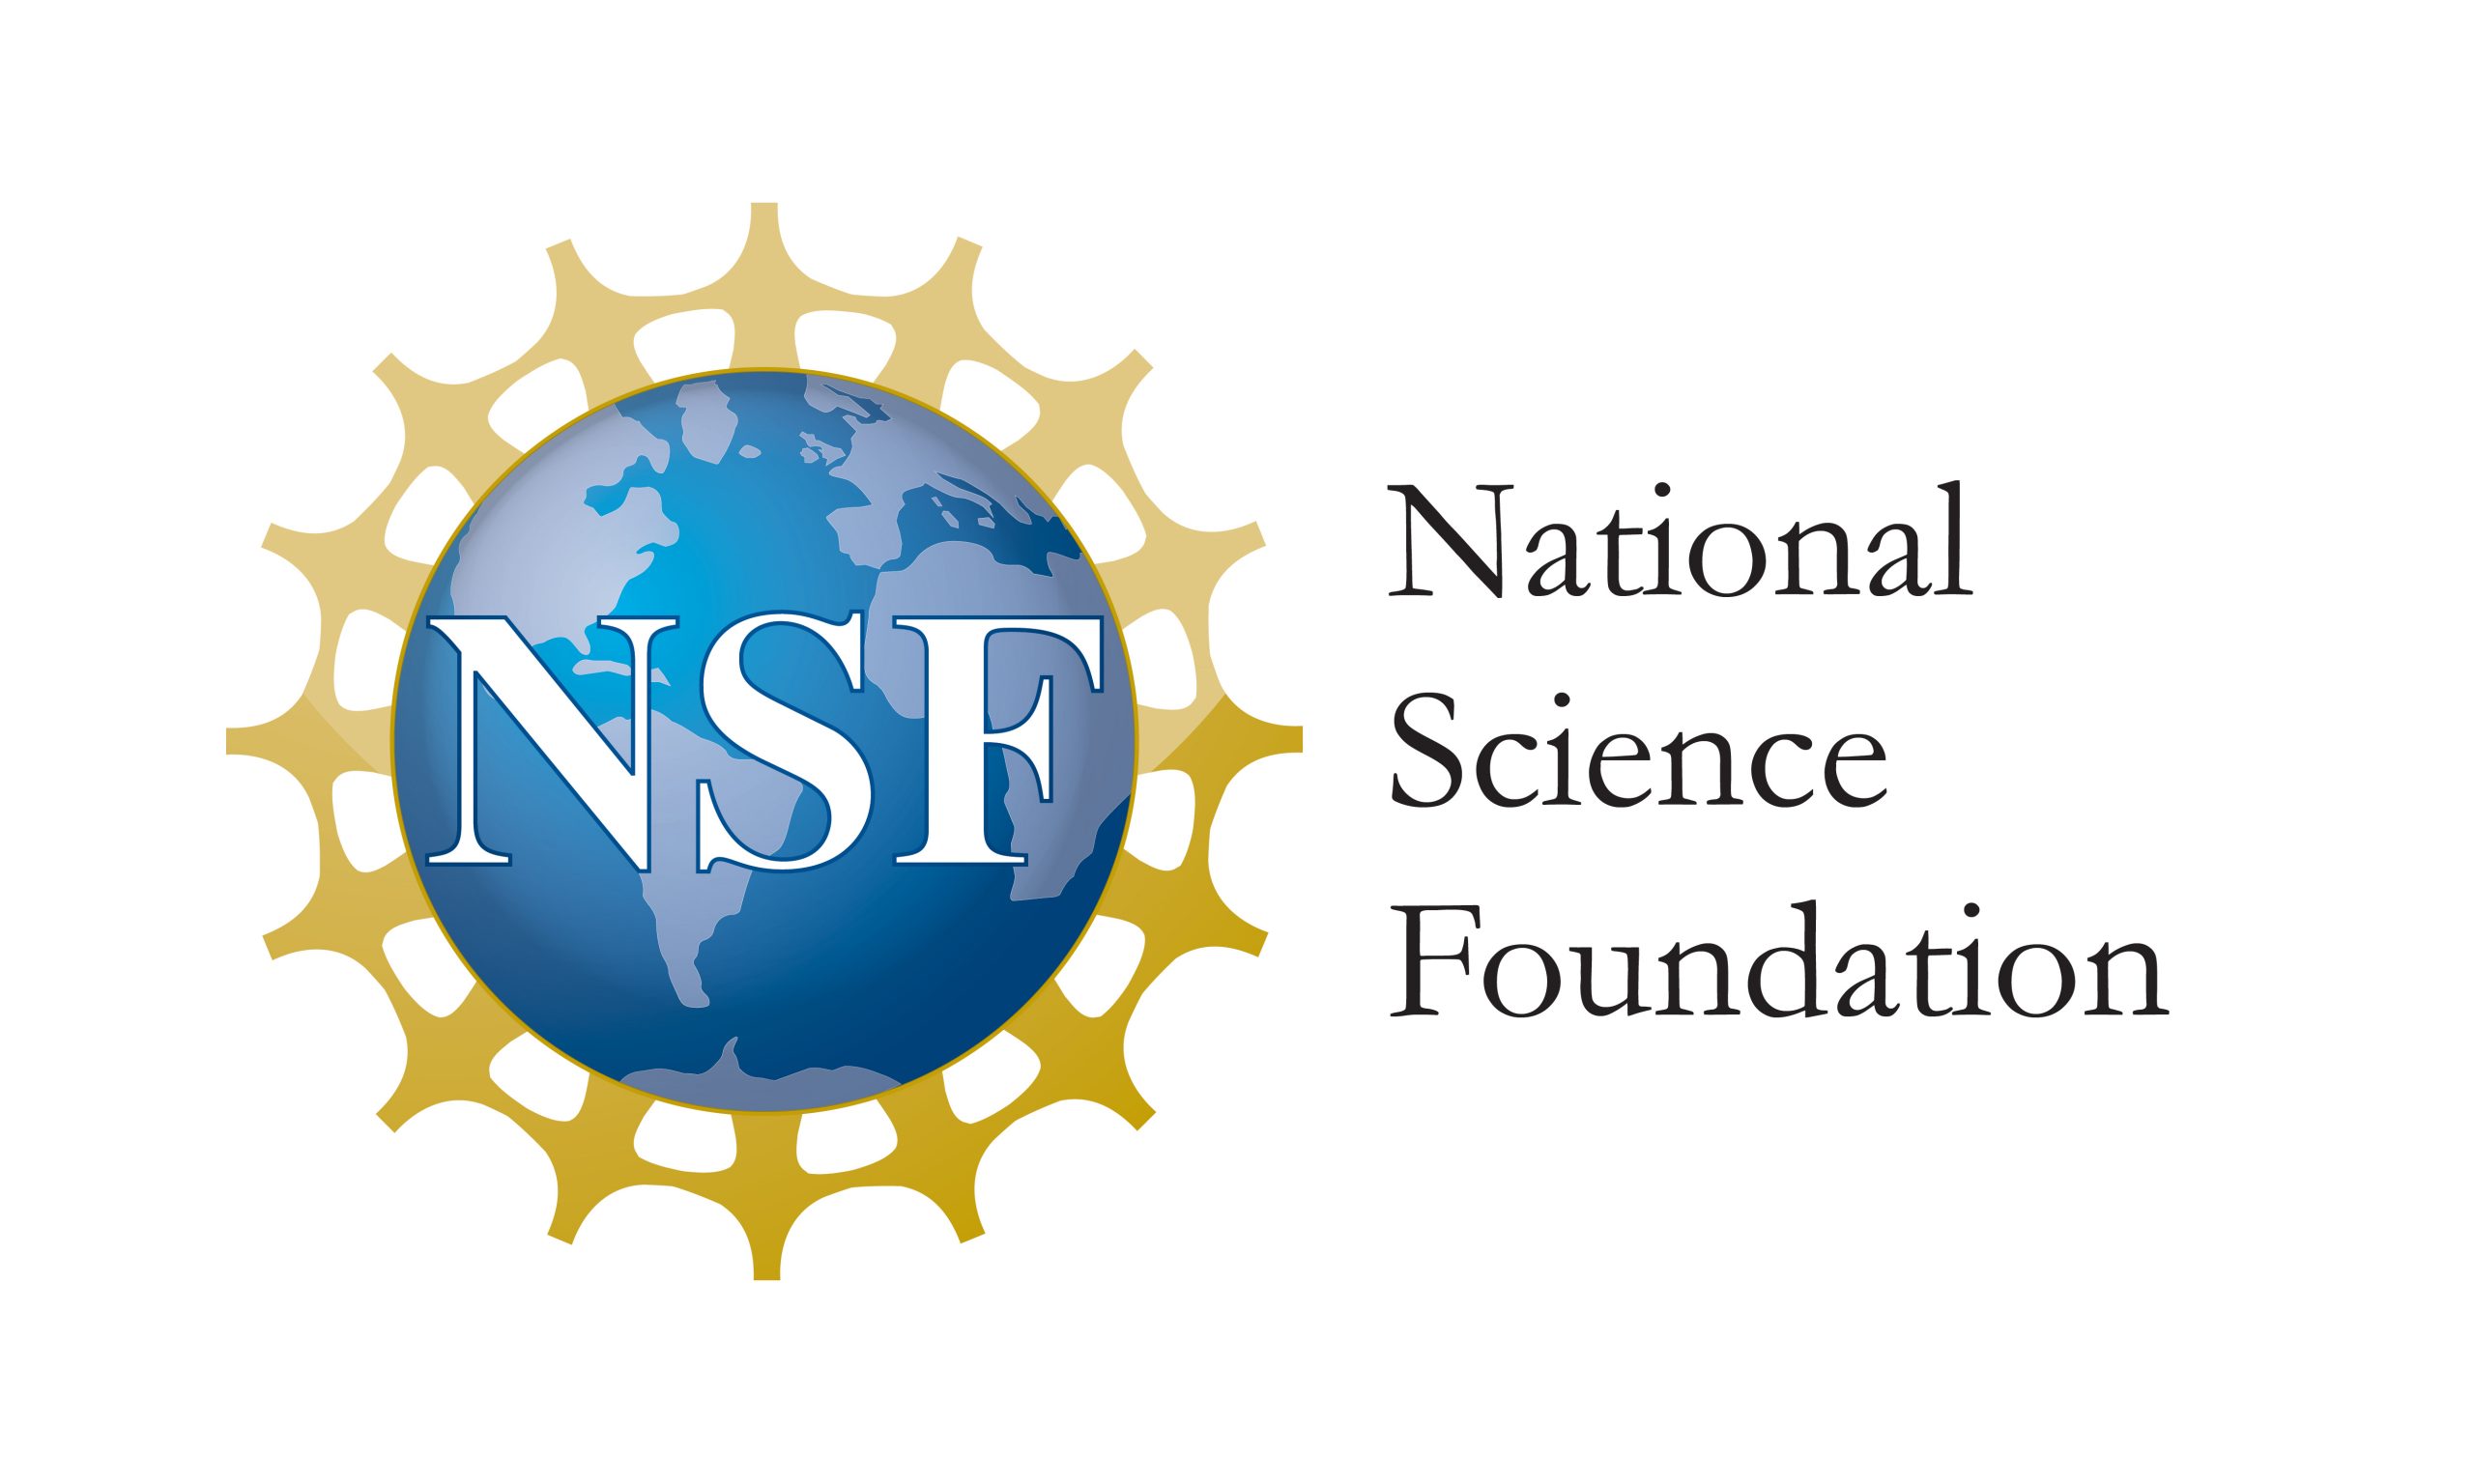 Национальный научный фонд. National Science Foundation. National Science Foundation (NSF),. NSF лого. НСФ.